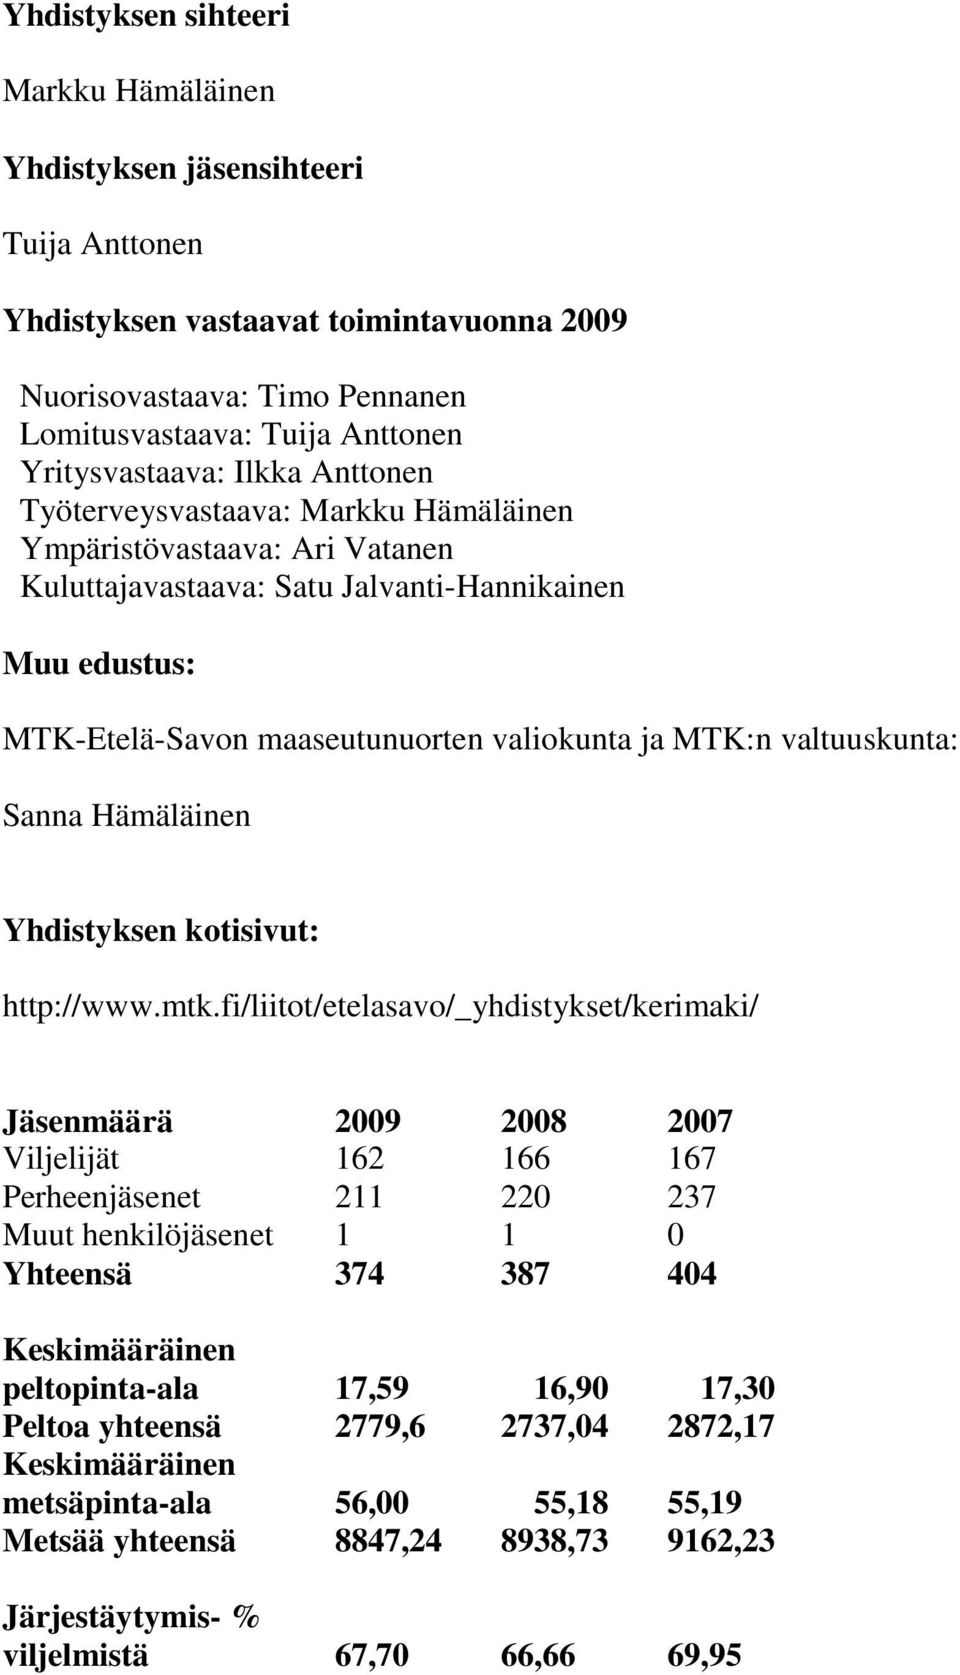 valiokunta ja MTK:n valtuuskunta: Sanna Hämäläinen Yhdistyksen kotisivut: http://www.mtk.